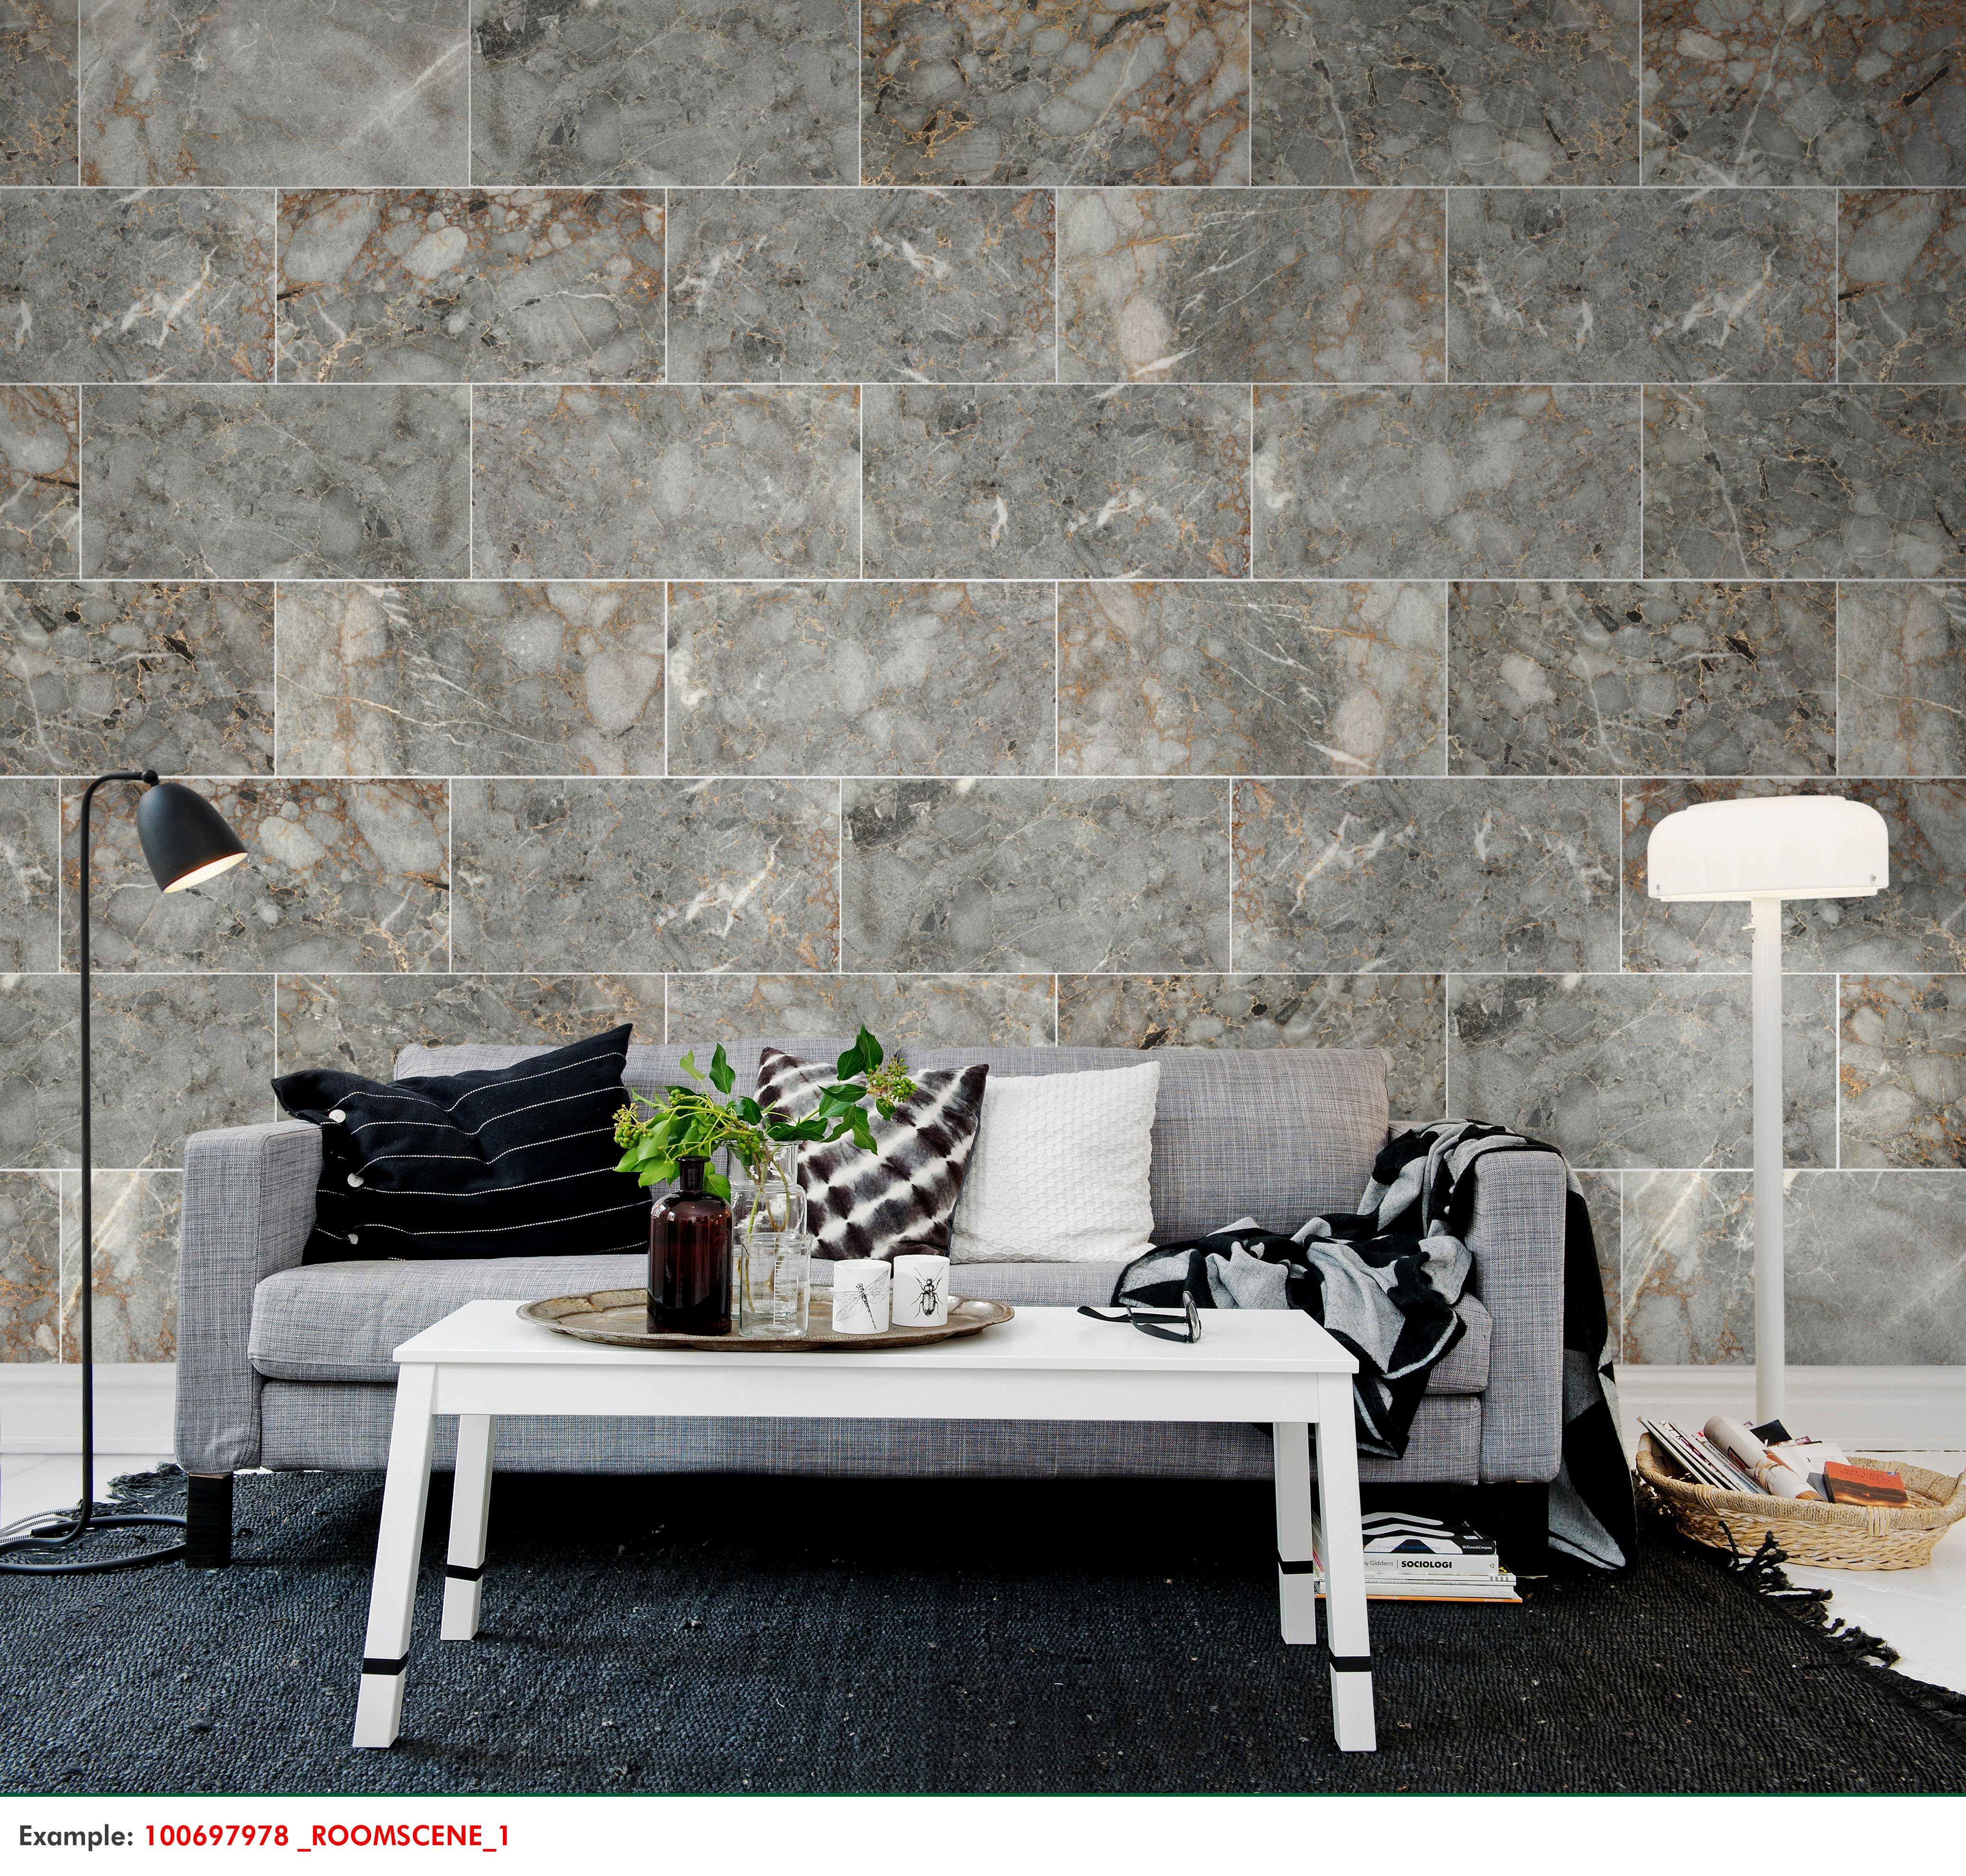 Plata Reserve Polished Marble Tile